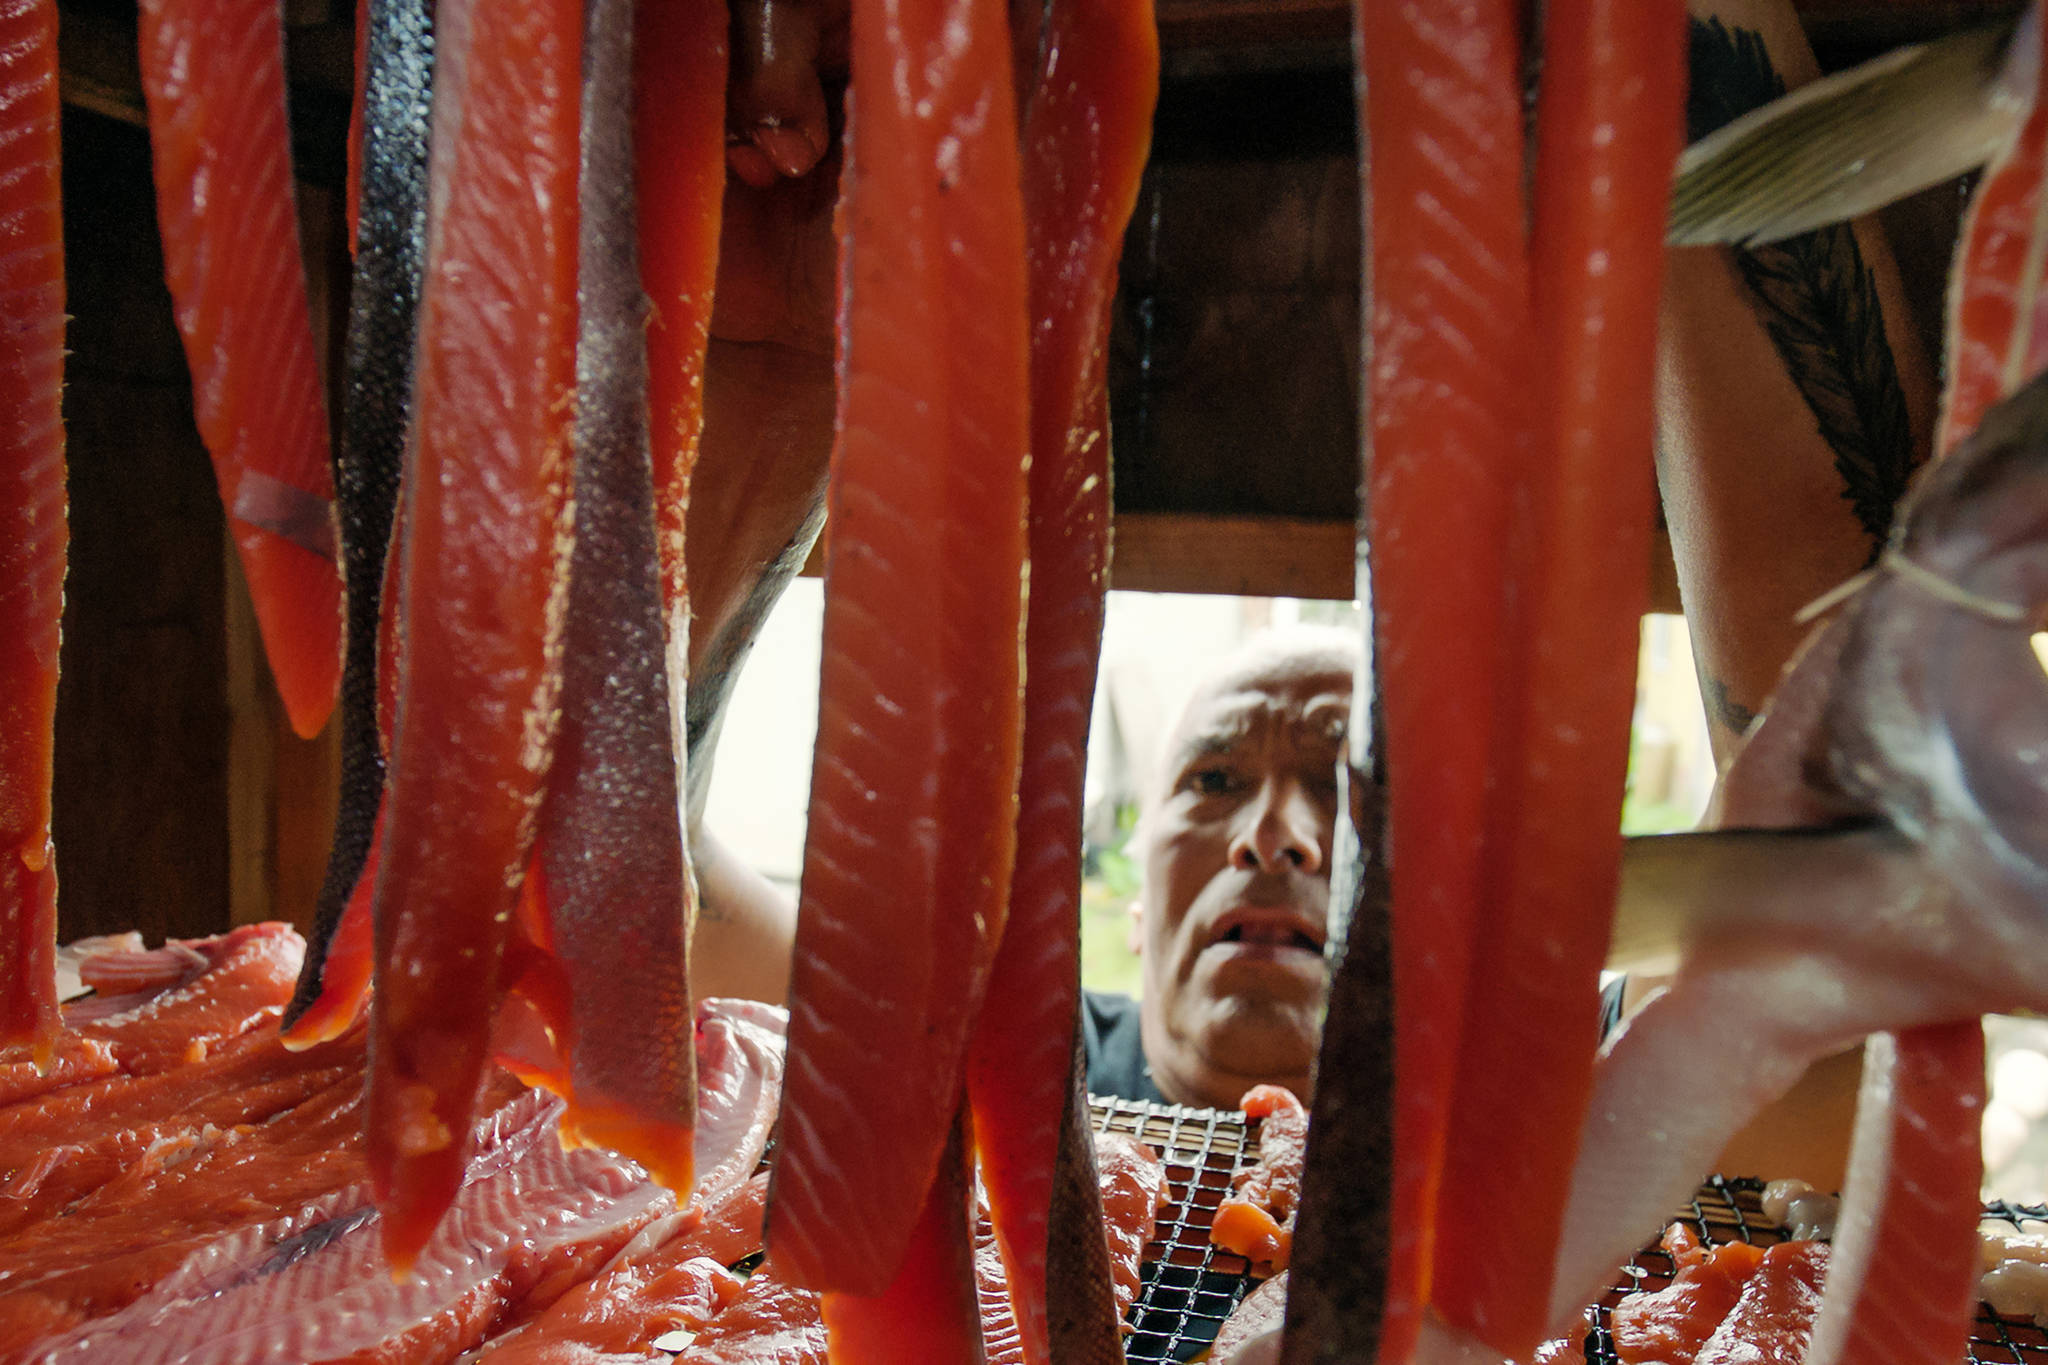 Anthony Gastelum hangs fresh caught salmon in the smokehouse in the village of Kake. (Courtesy photo | Ben Hamilton)